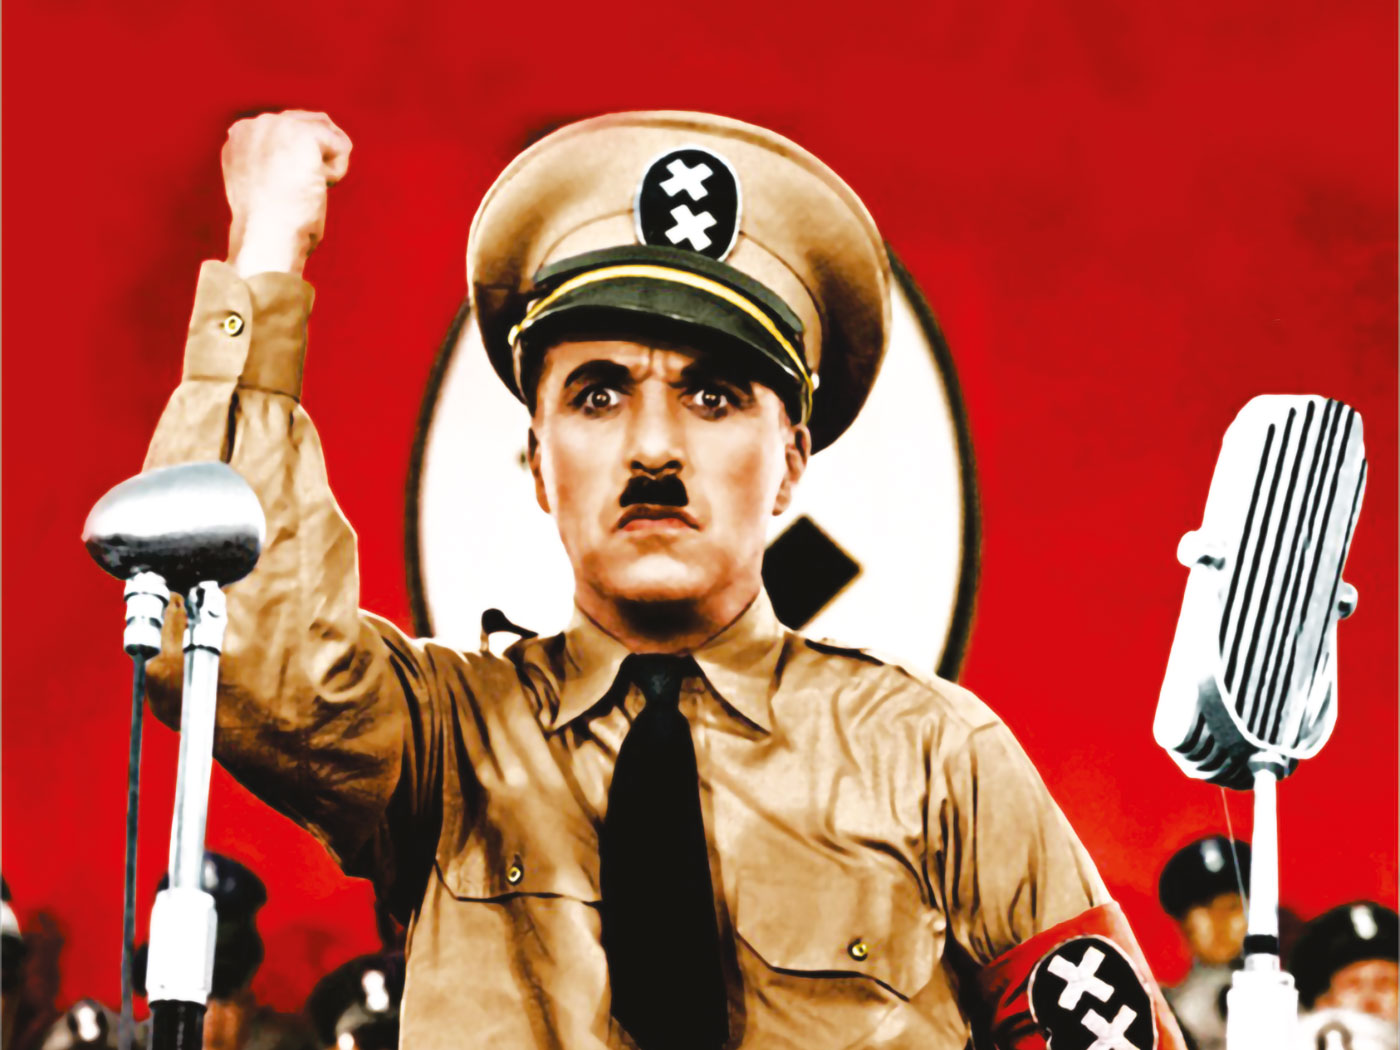 “Ο Μεγάλος δικτάτορας“ μια ταινία του Τσάρλι Τσάπλιν που έμεινε στην Ιστορία (video)